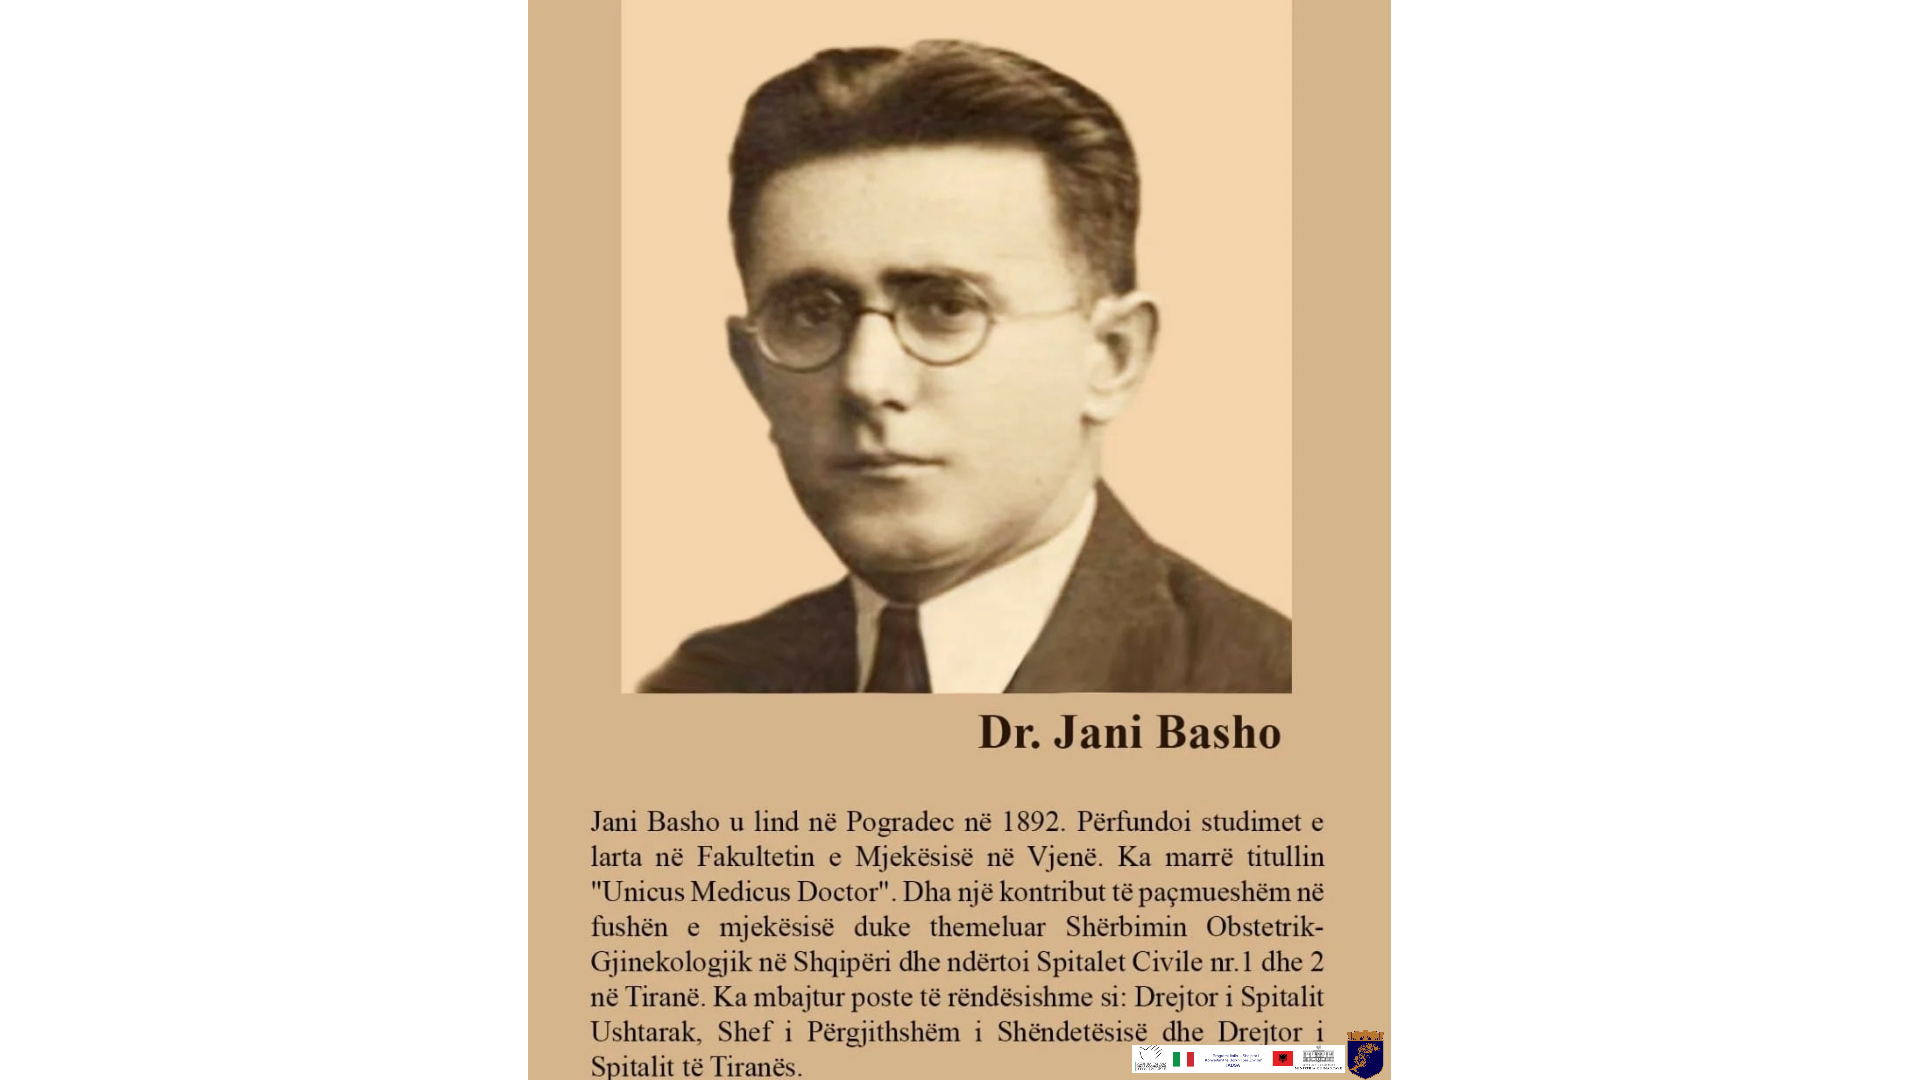 Edukim përmes kulturës, në përkujtim të DR. Jani Basho